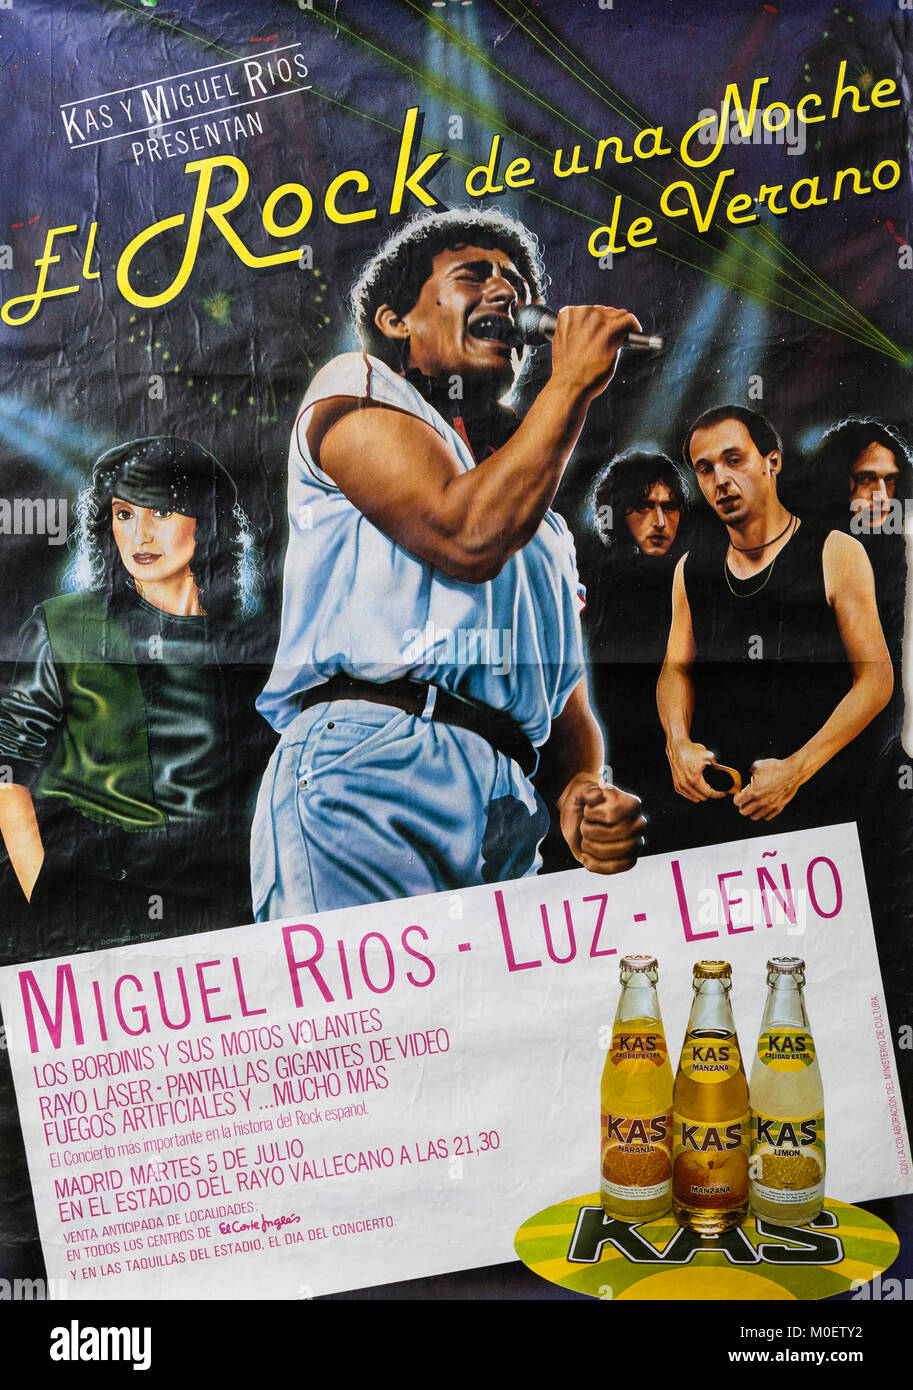 Miguel Rios, Luz and Leño in El Rock de una noche de verano, Madrid July 1983. Musical concert poster Stock Photo